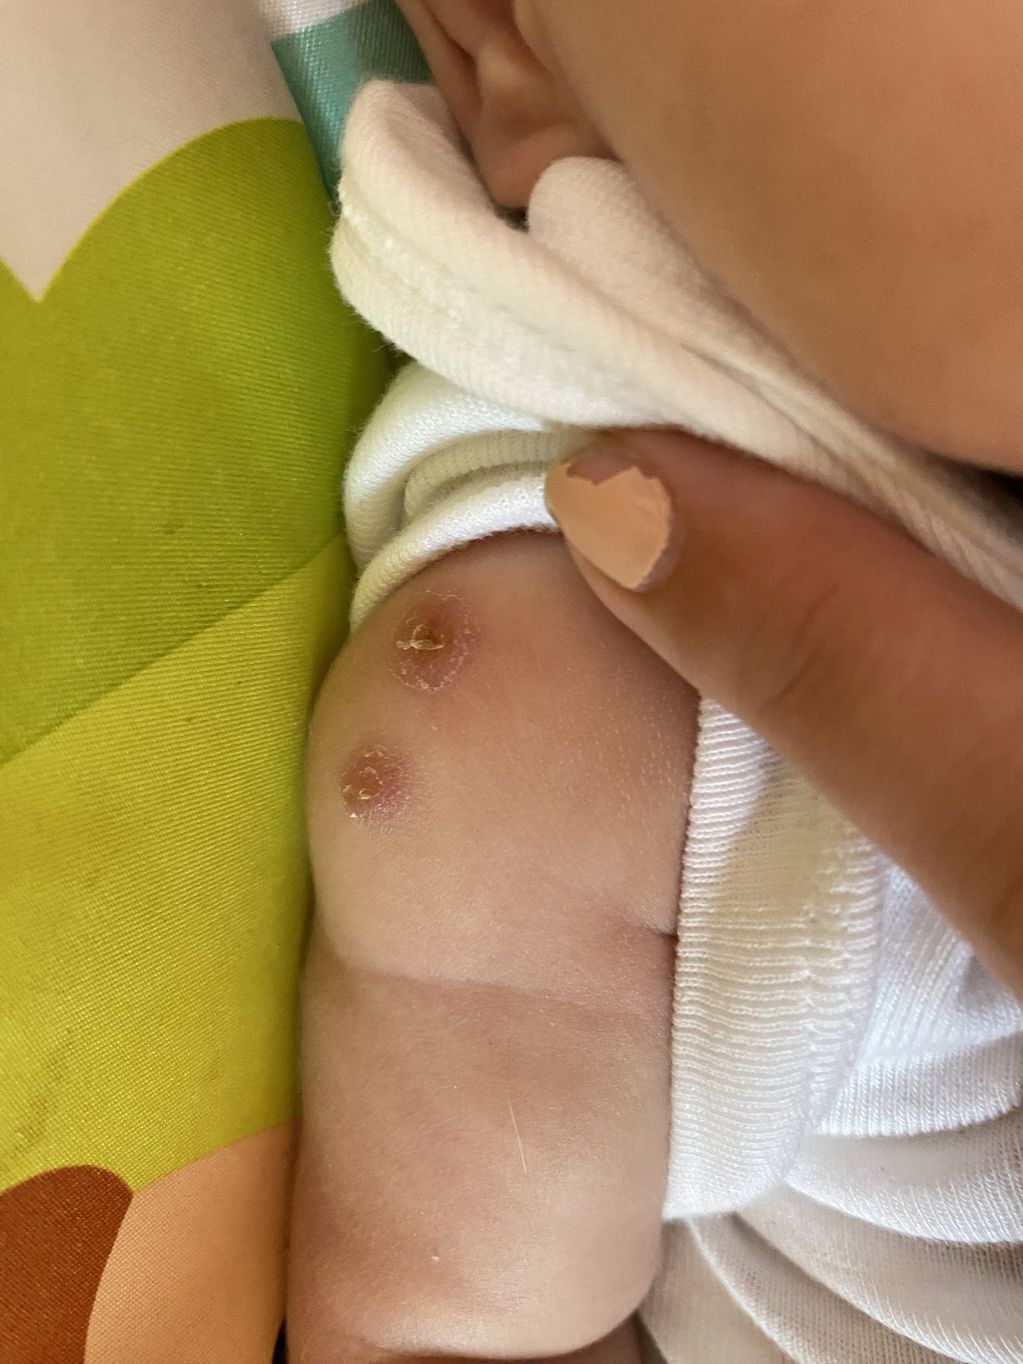 A uno de los bebés le pusieron dos veces la misma vacuna.